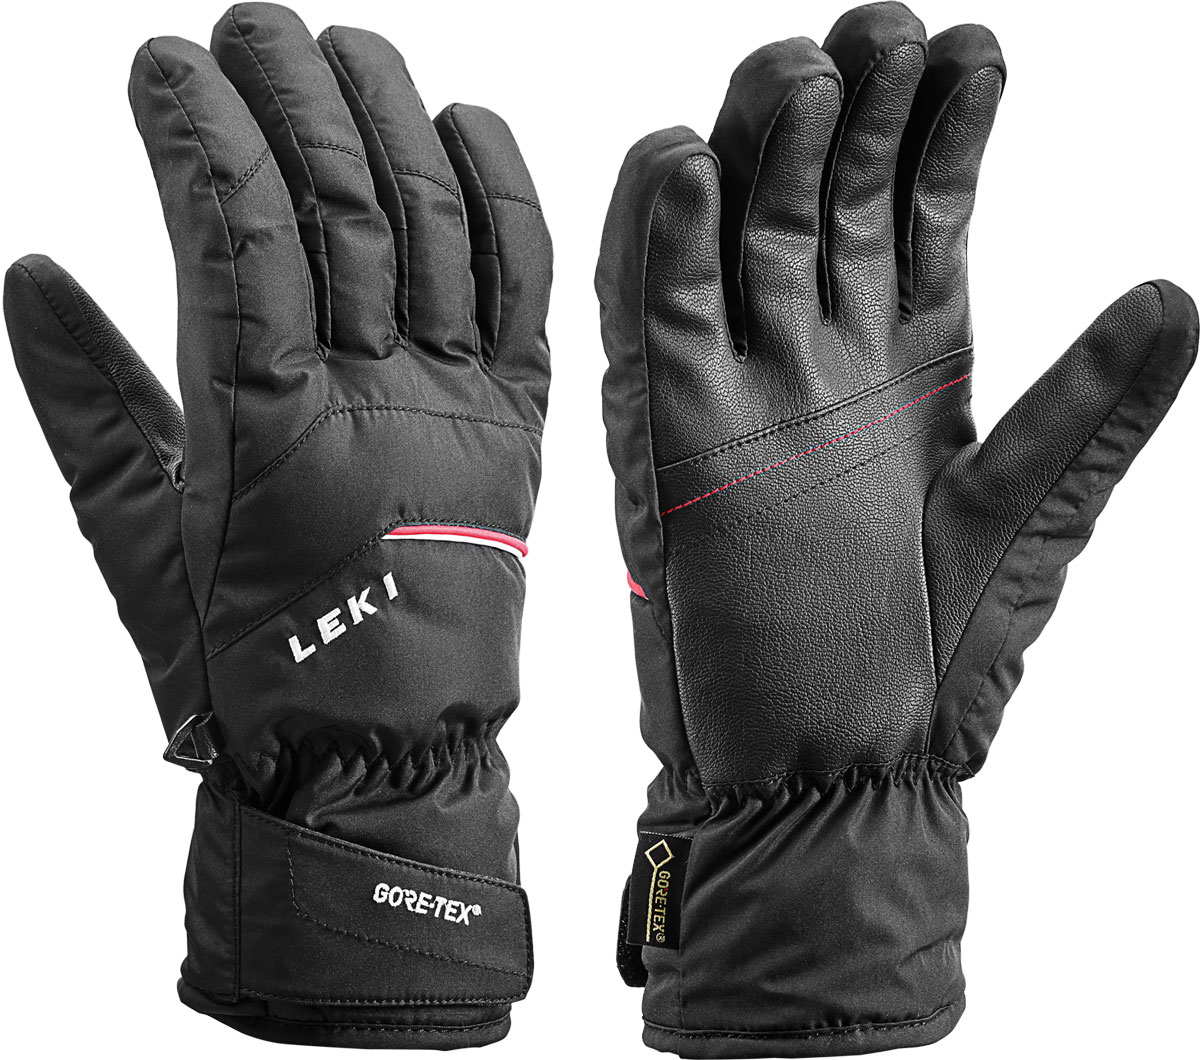 Men’s downhill ski gloves